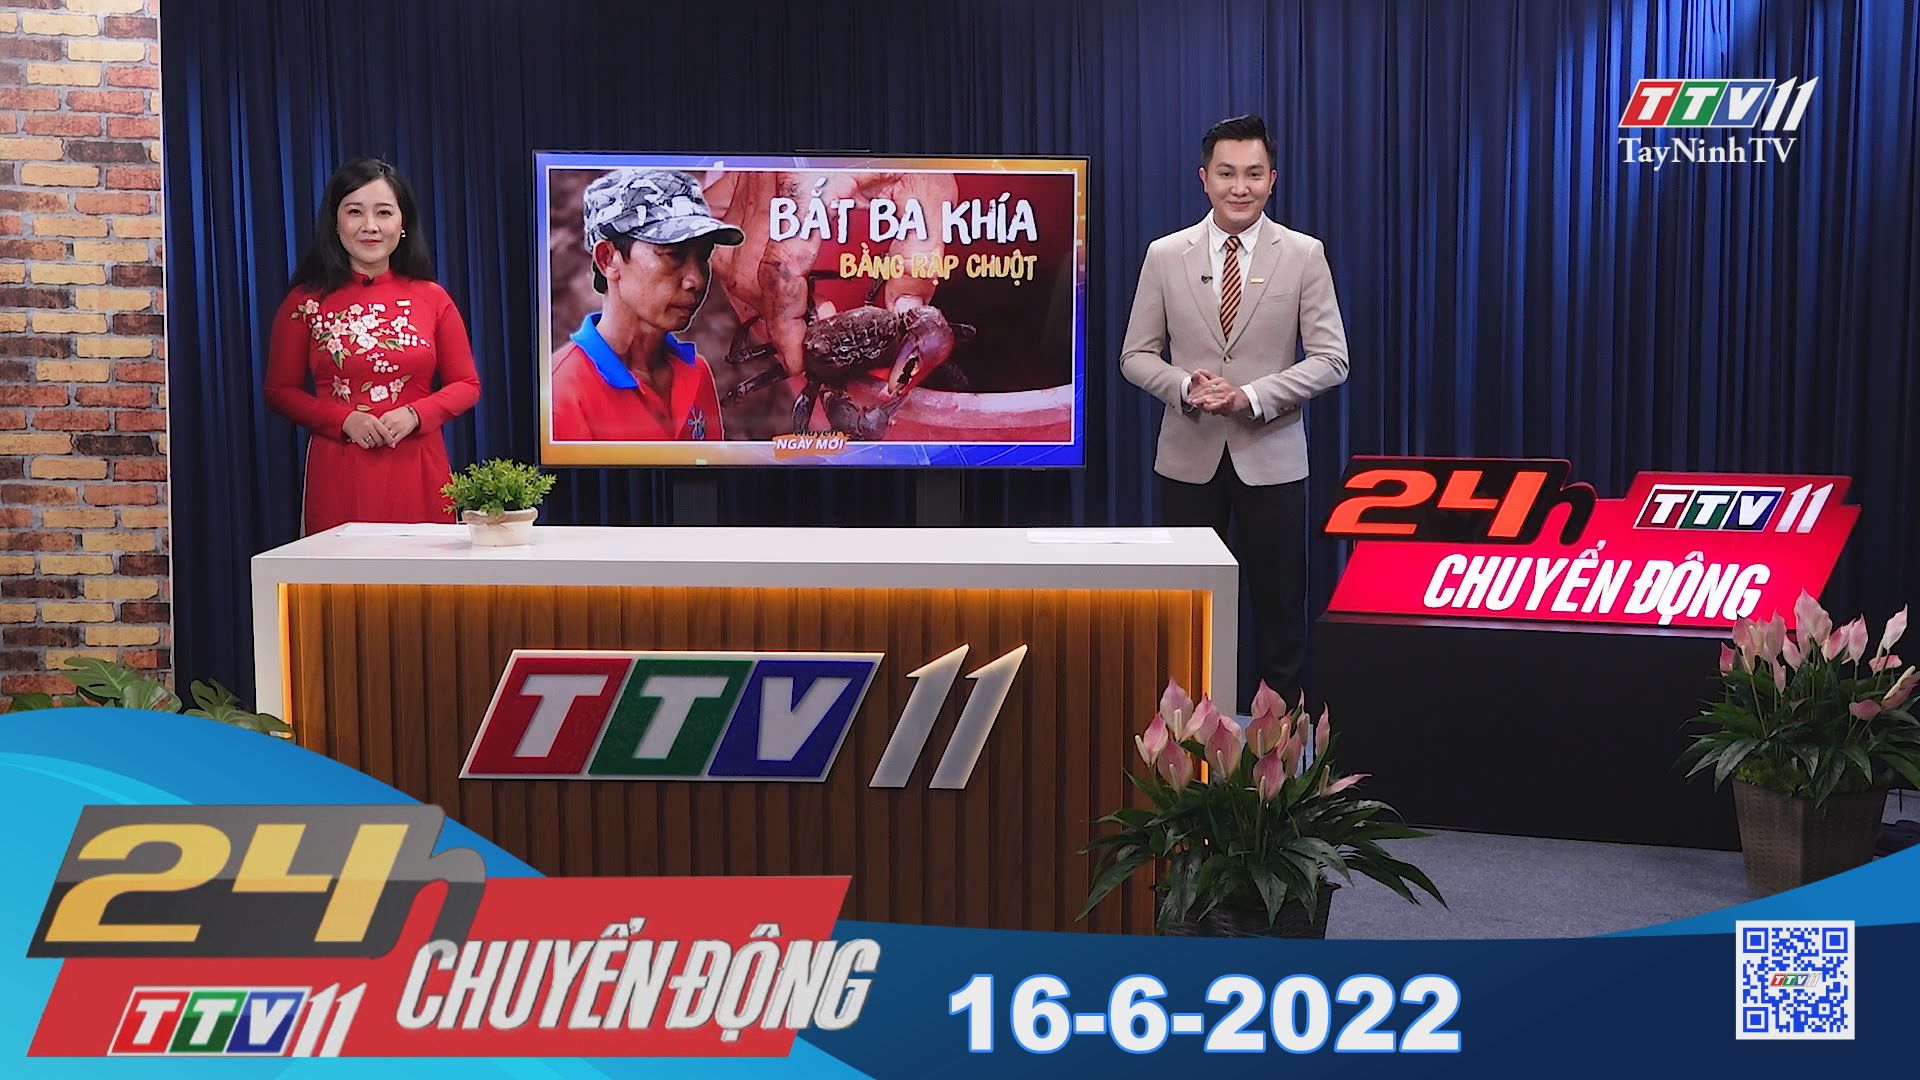 24h Chuyển động 16-6-2022 | Tin tức hôm nay | TayNinhTV